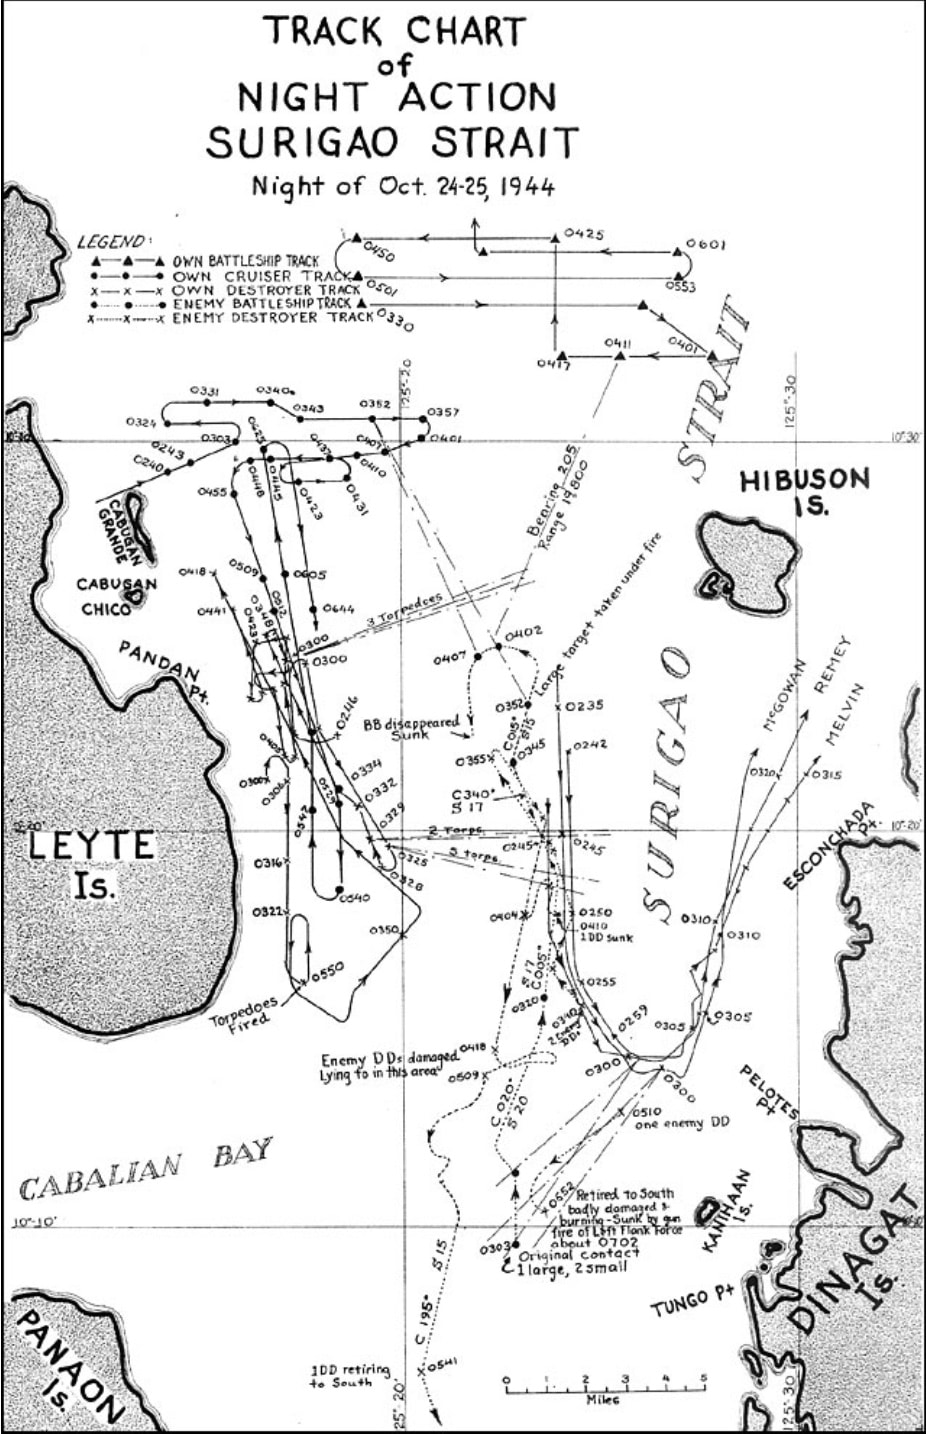 Battle of Suriago Strait